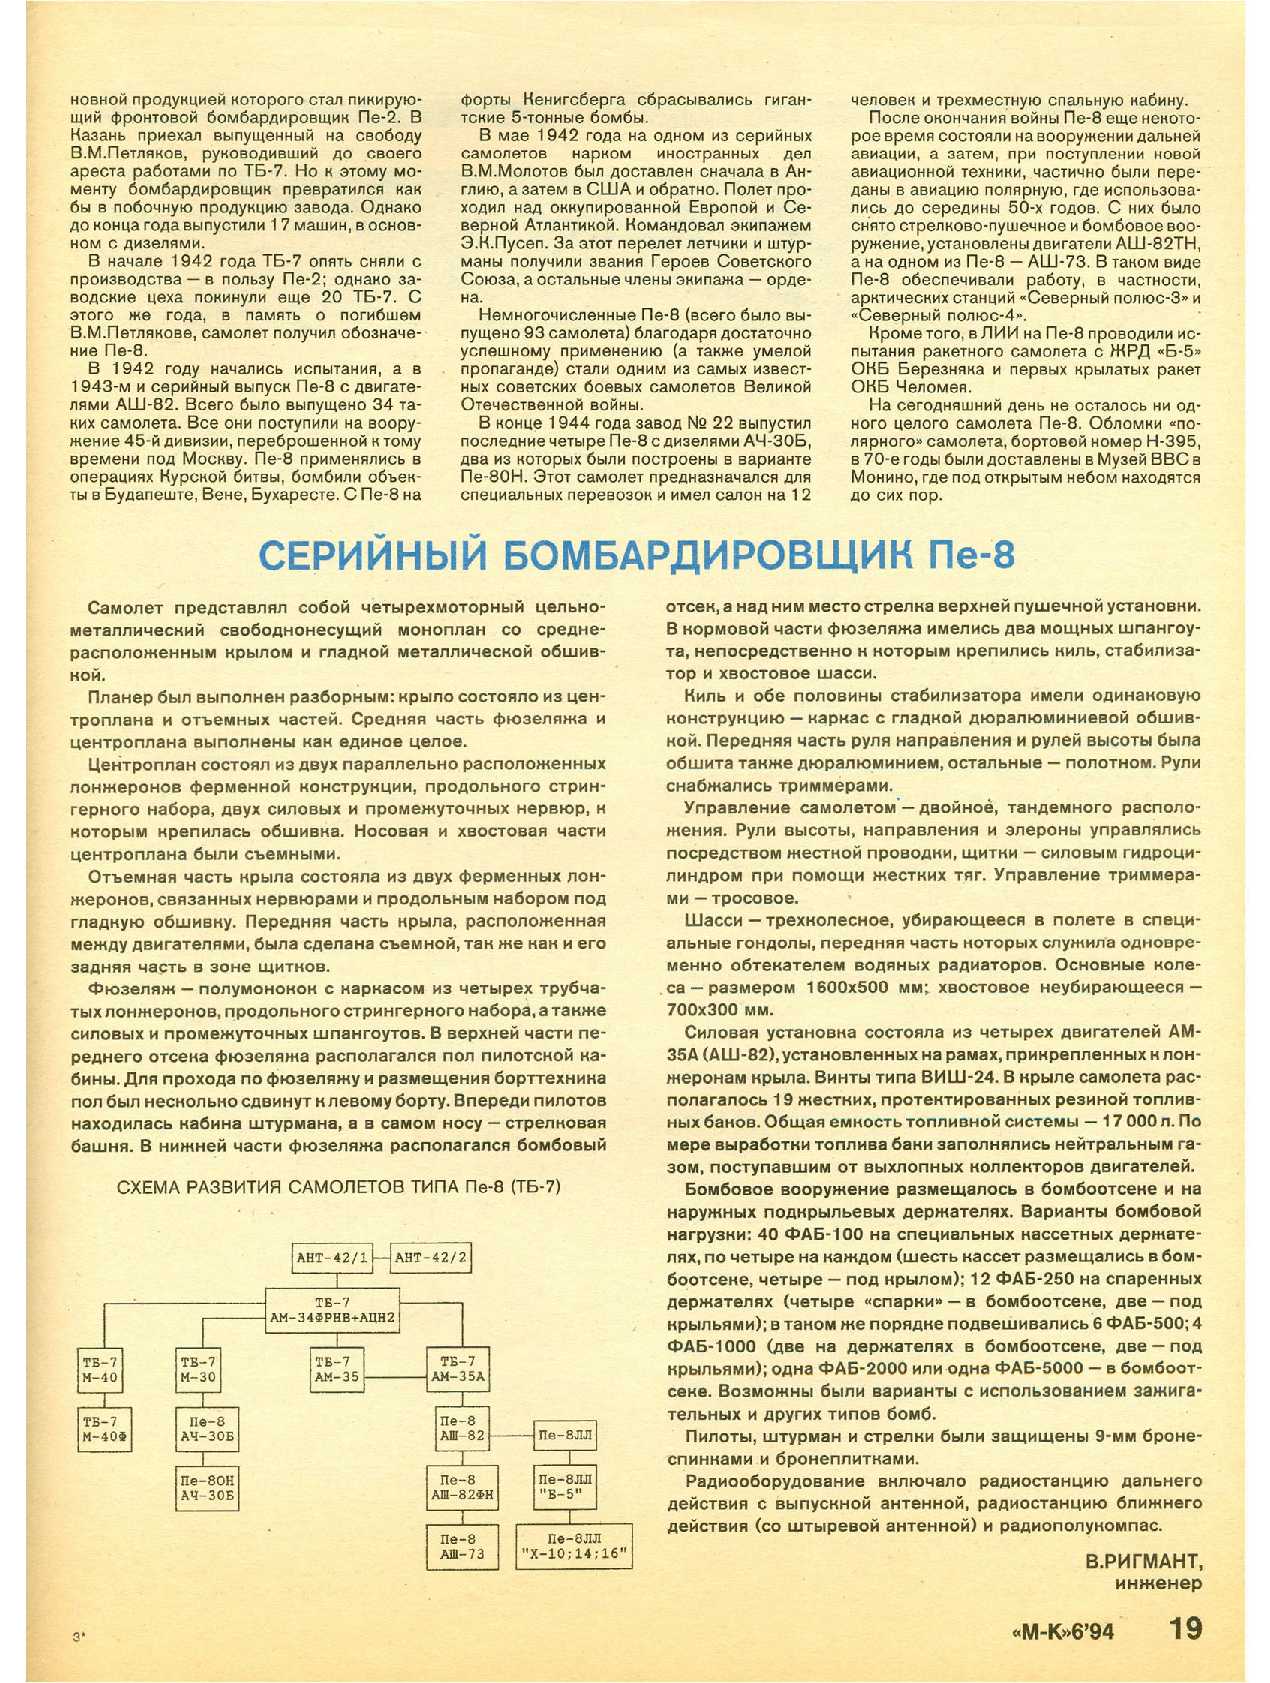 МК 6, 1994, 19 c.